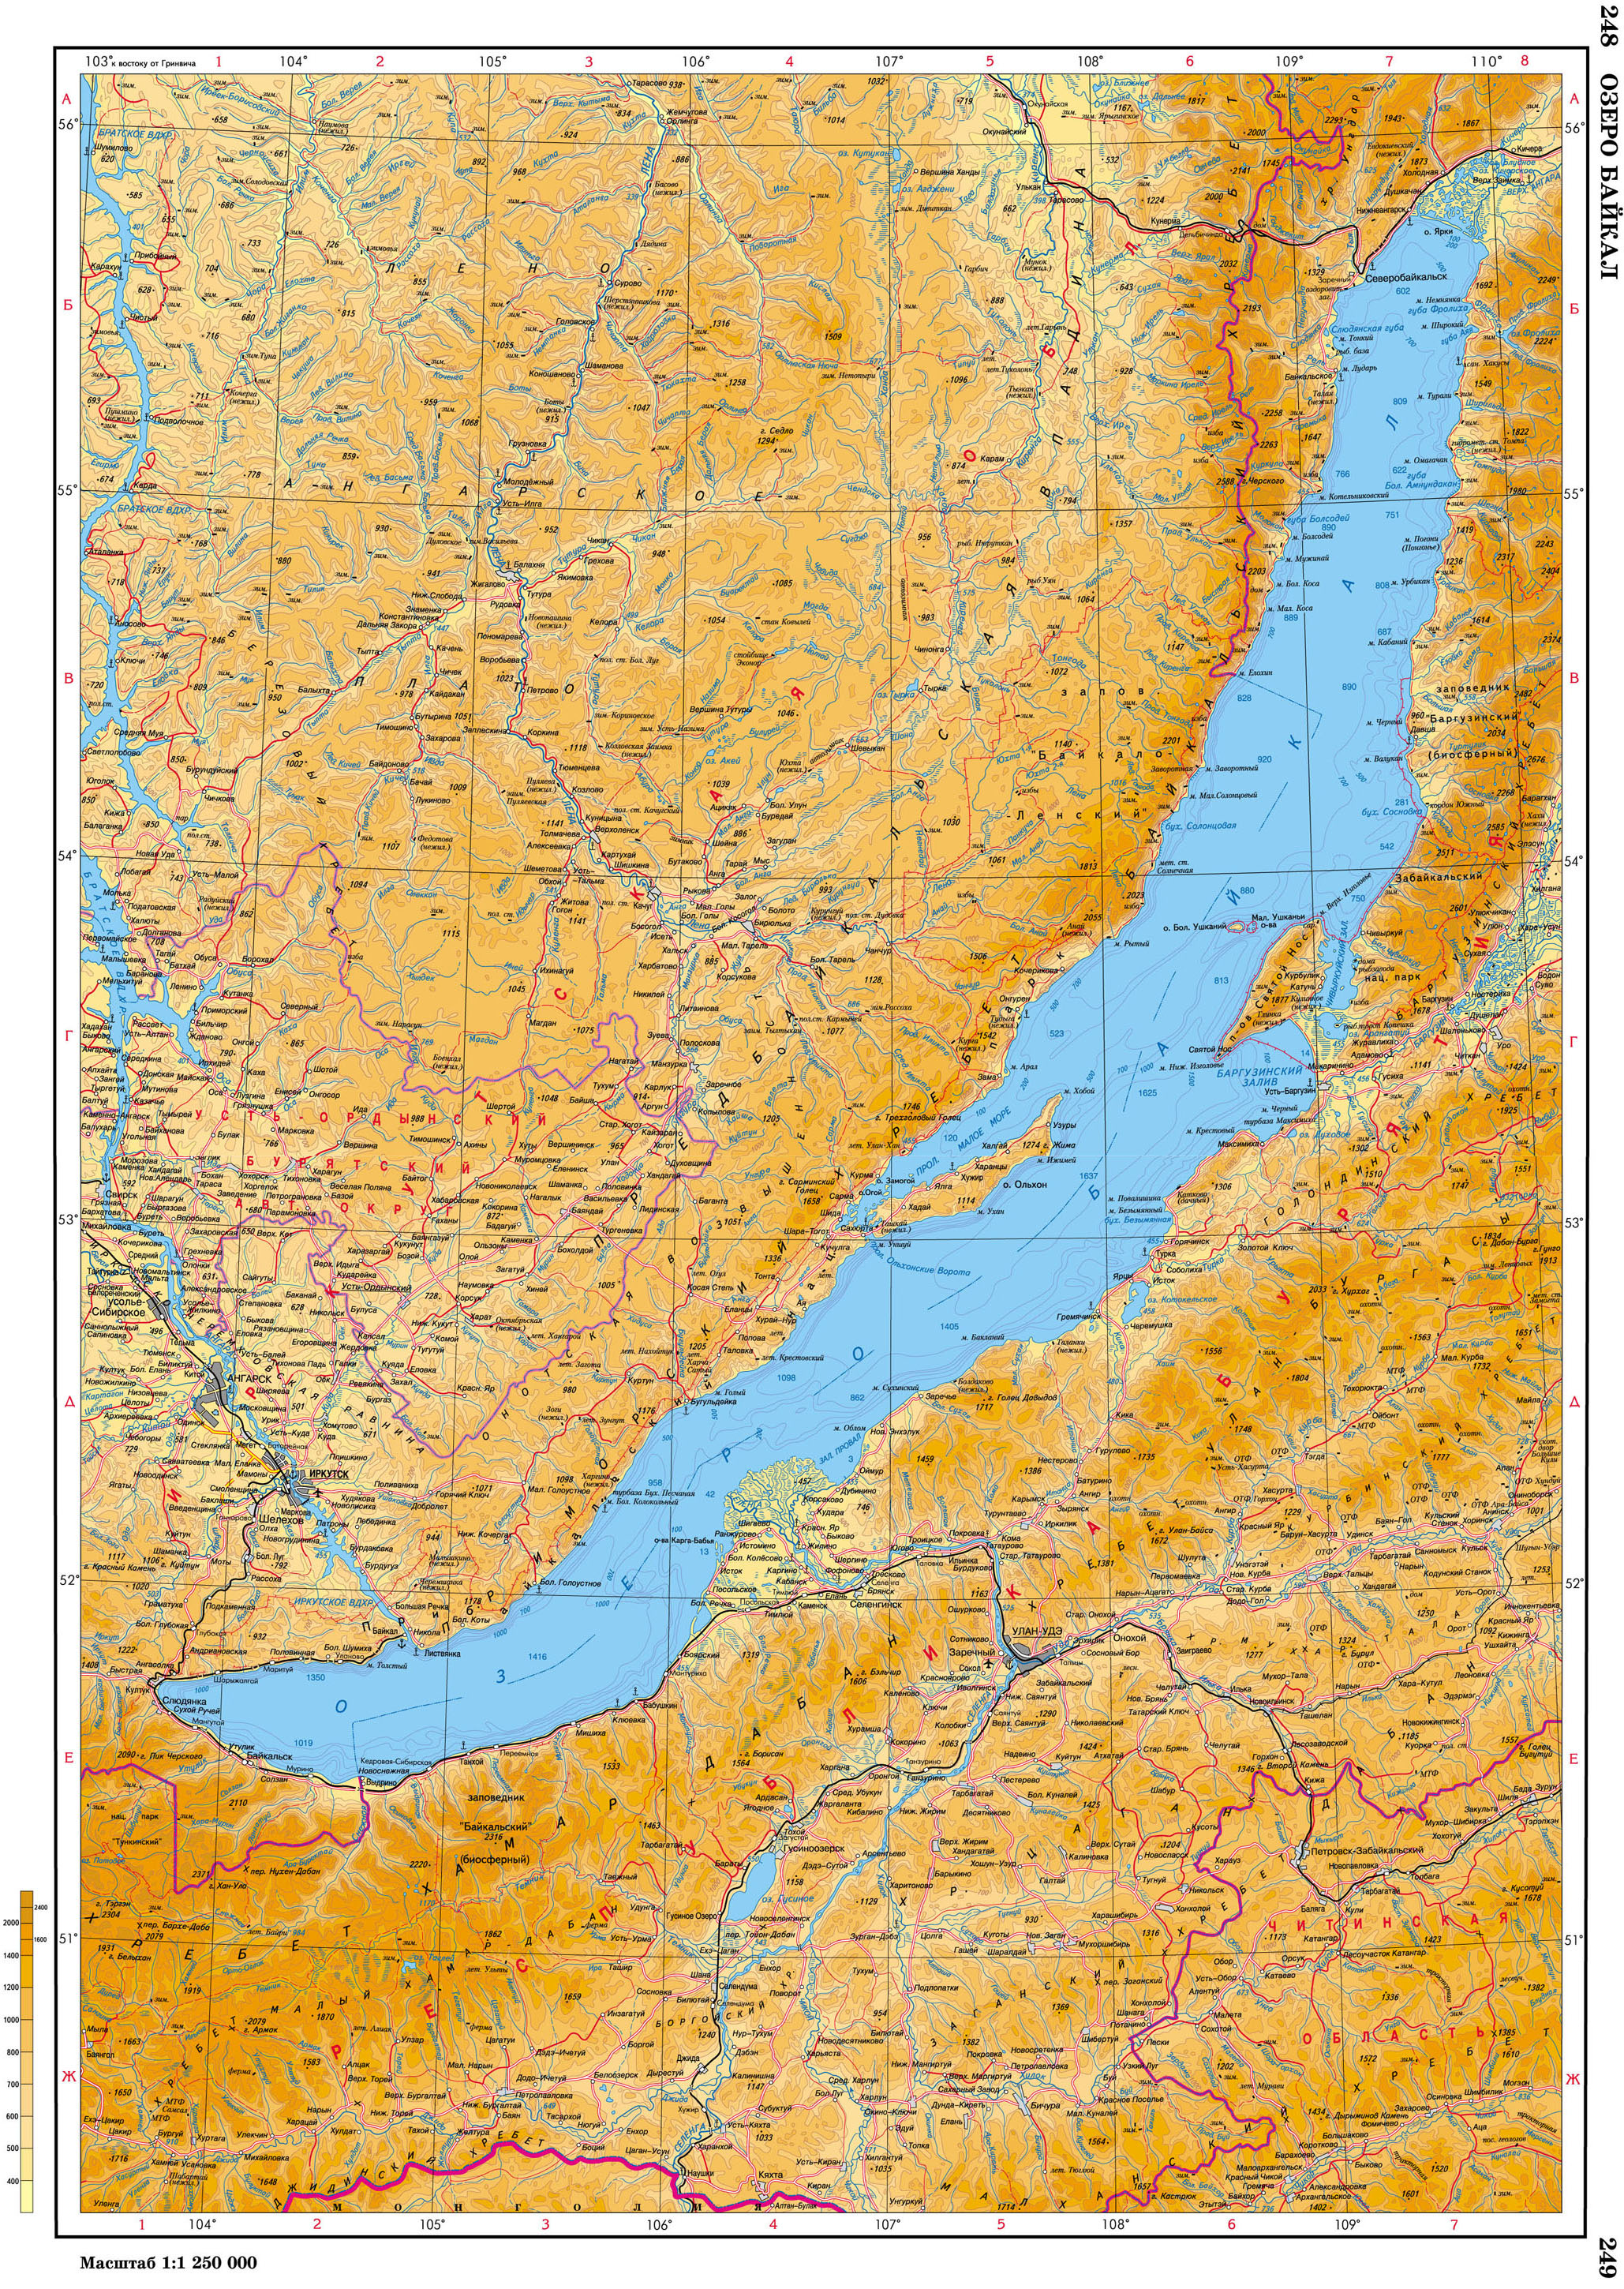 Найти озеро байкал на карте. Озеро Байкал на карте. Озеро Байкал карта географическая. Физическая карта Байкала. Озеро Байкал на карте России.